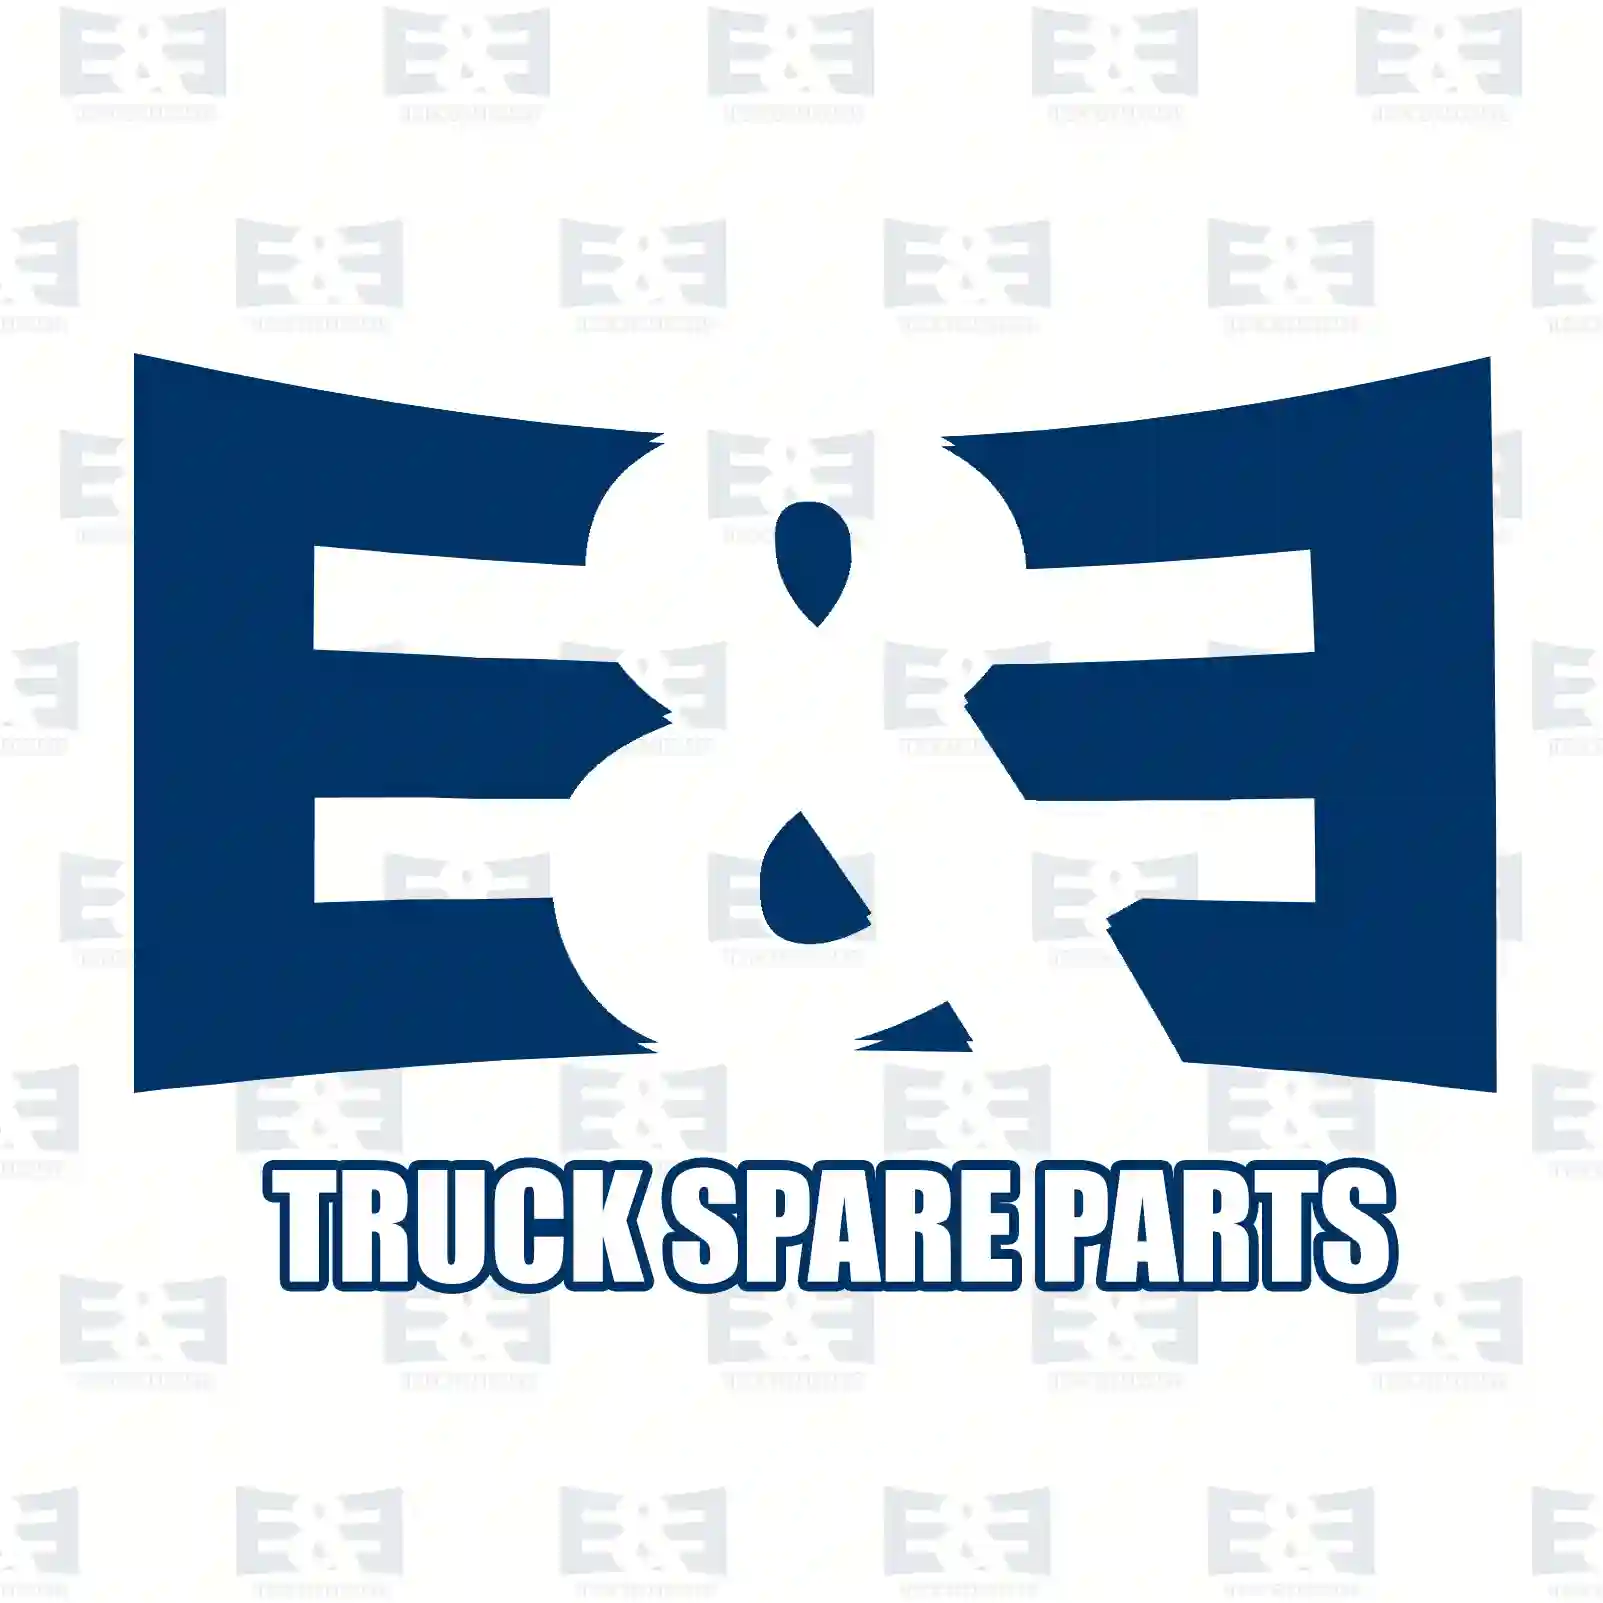 Level sensor, 2E2203706, 81274210107, 81274210122, 81274210133, 81274210181 ||  2E2203706 E&E Truck Spare Parts | Truck Spare Parts, Auotomotive Spare Parts Level sensor, 2E2203706, 81274210107, 81274210122, 81274210133, 81274210181 ||  2E2203706 E&E Truck Spare Parts | Truck Spare Parts, Auotomotive Spare Parts